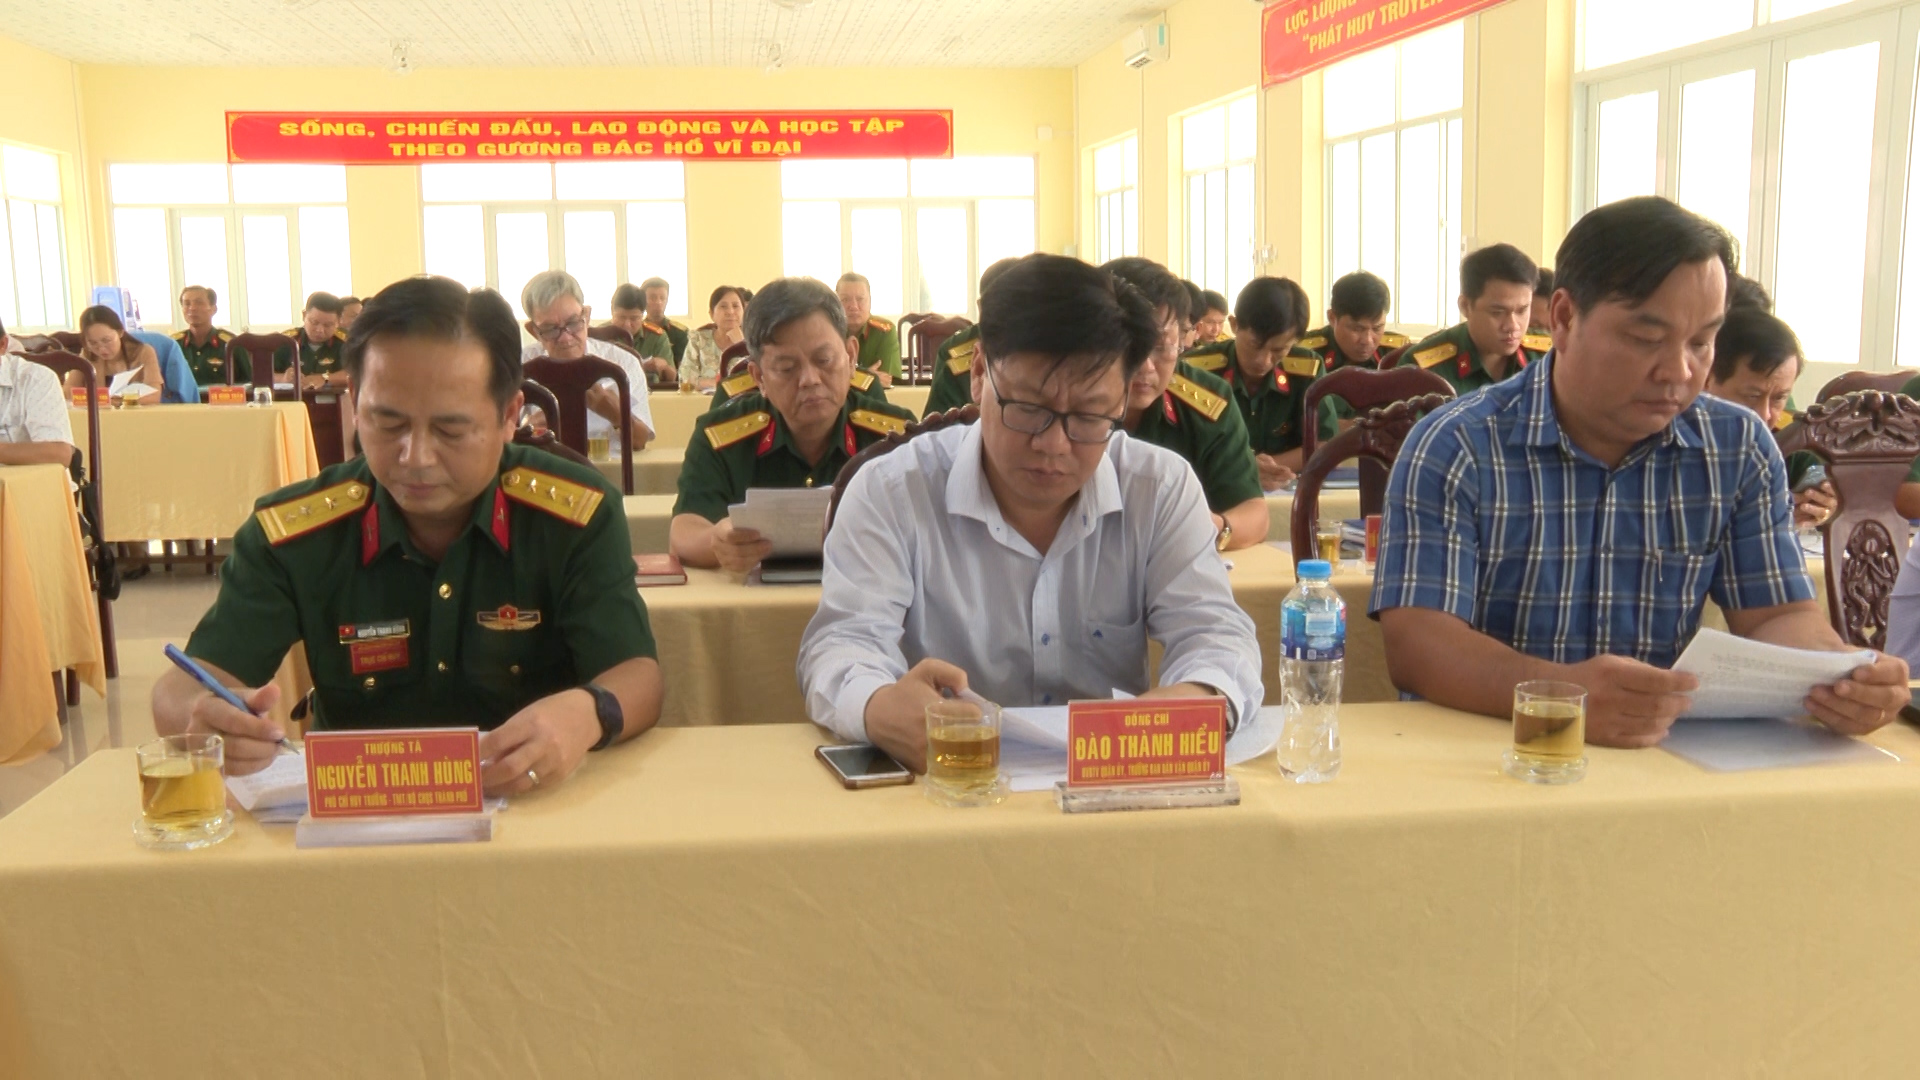 Hình 1: Lãnh đạo Bộ chỉ huy quận sự thành phố Cần Thơ và Lãnh đạo quận Ninh Kiều tham dự hội nghị